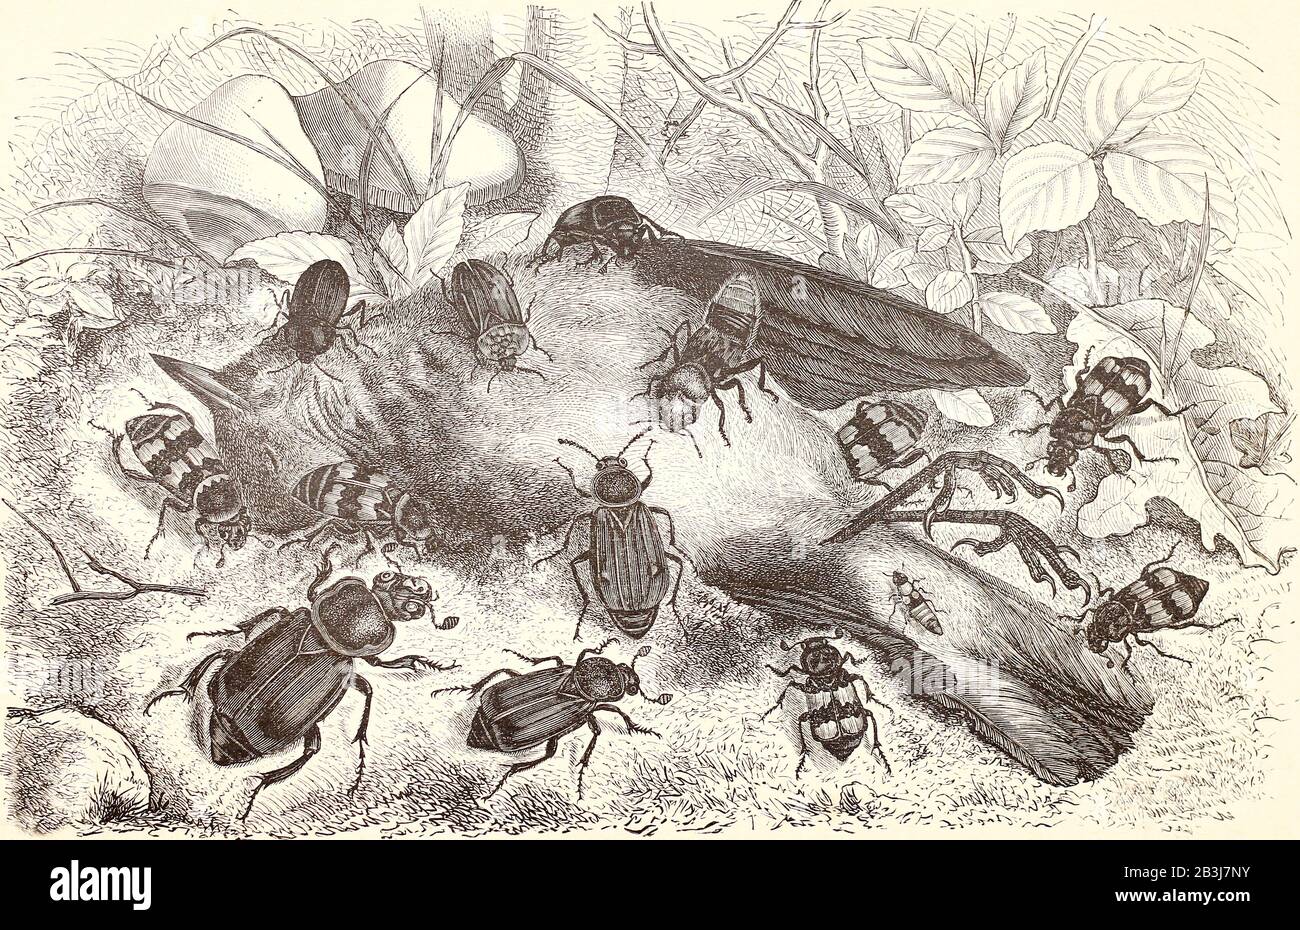 Käfer aus den Familien der Fleischfresser (Silphida) und Raubtiere (Staphyliniiden) ernähren sich vom Körper eines toten Vogels. Gravur des 19. Jahrhunderts. Stockfoto